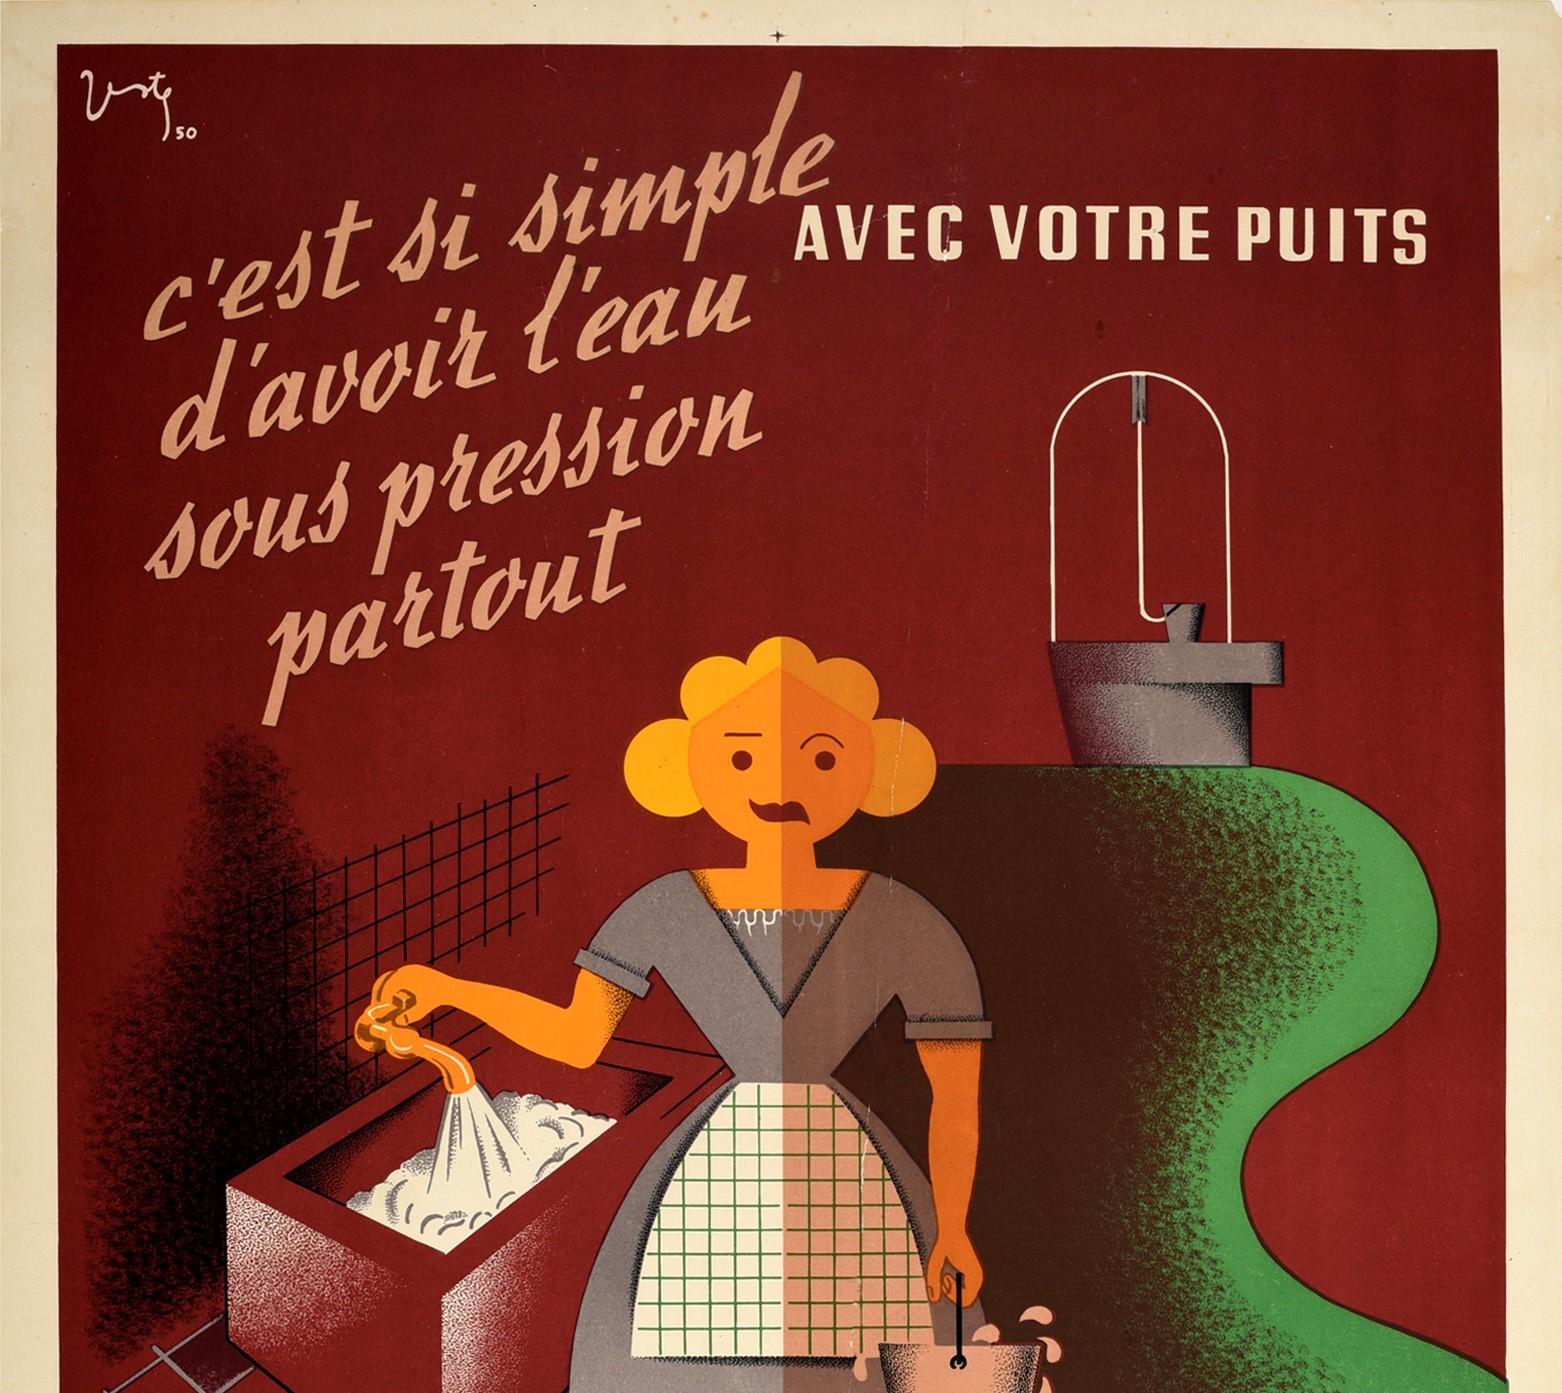 Original-Werbeplakat für Pompes Jeumont-Pumpen - Es ist so einfach, überall Wasser unter Druck zu haben / C'est si simple d'avoir l'eau sous pression partout - mit einem farbenfrohen modernistischen Design, das eine den Betrachter anblickende Dame